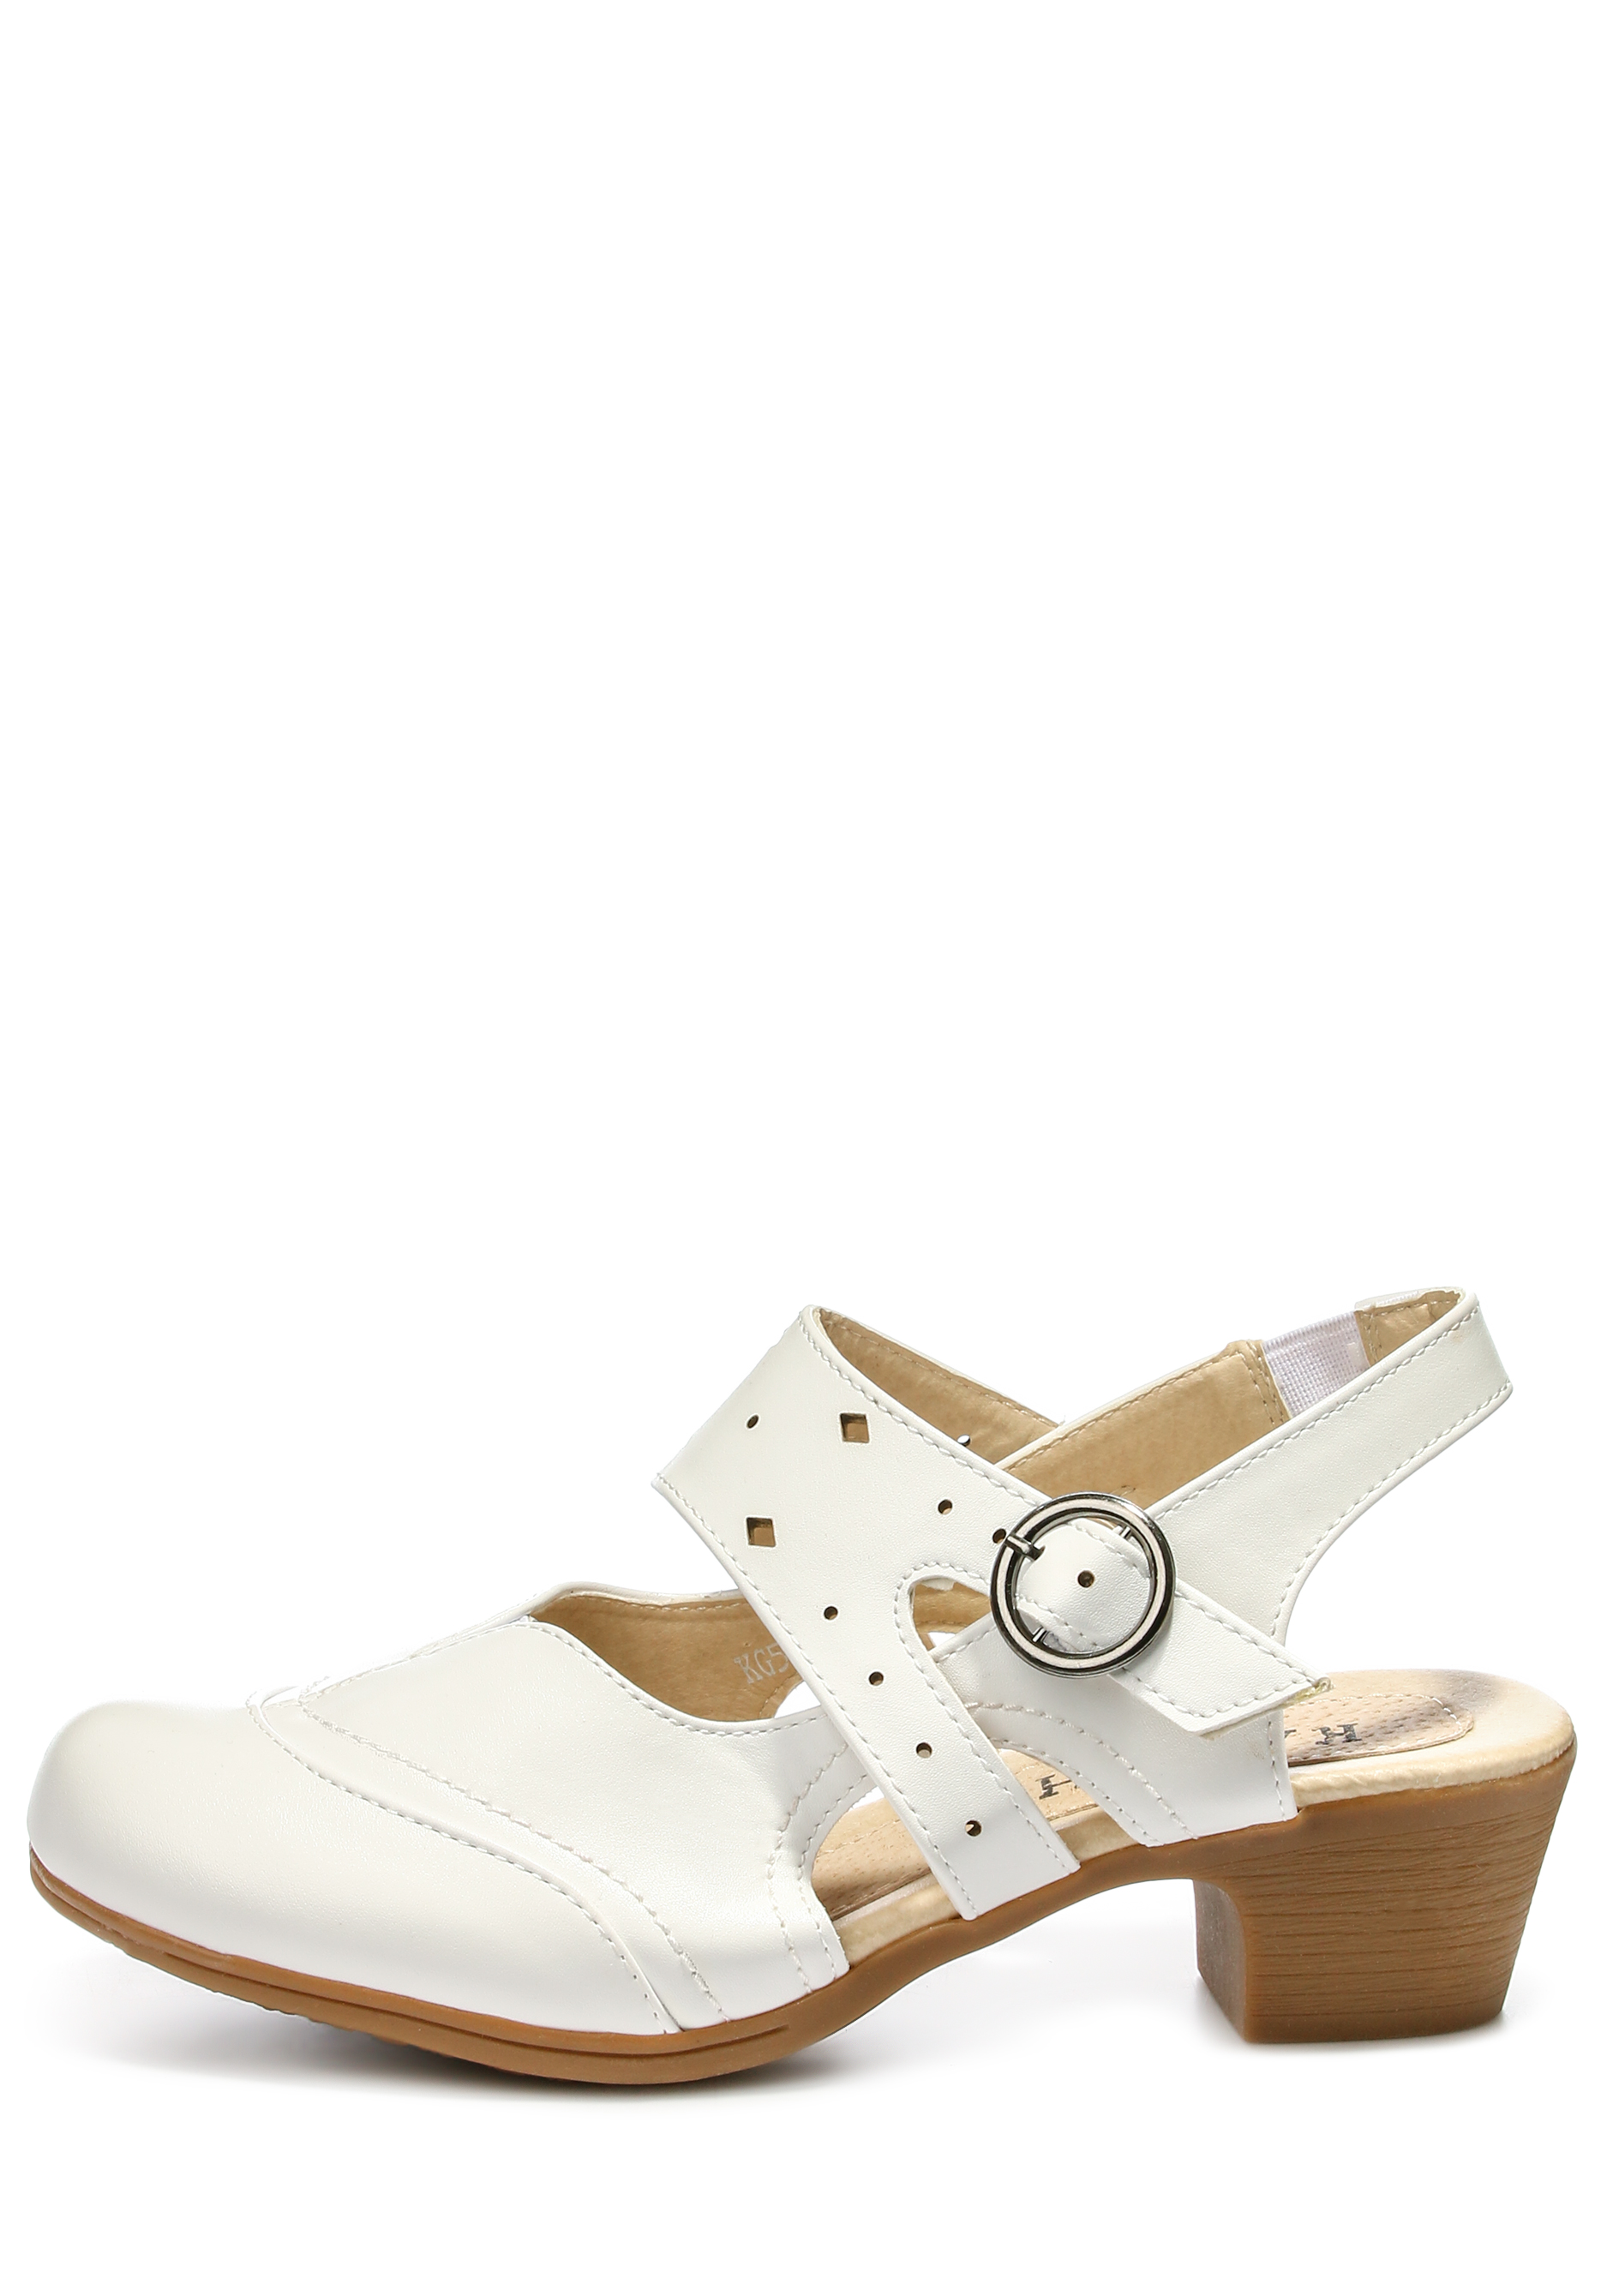 Туфли женские "Ариель", цвет белый, размер 38 - фото 2